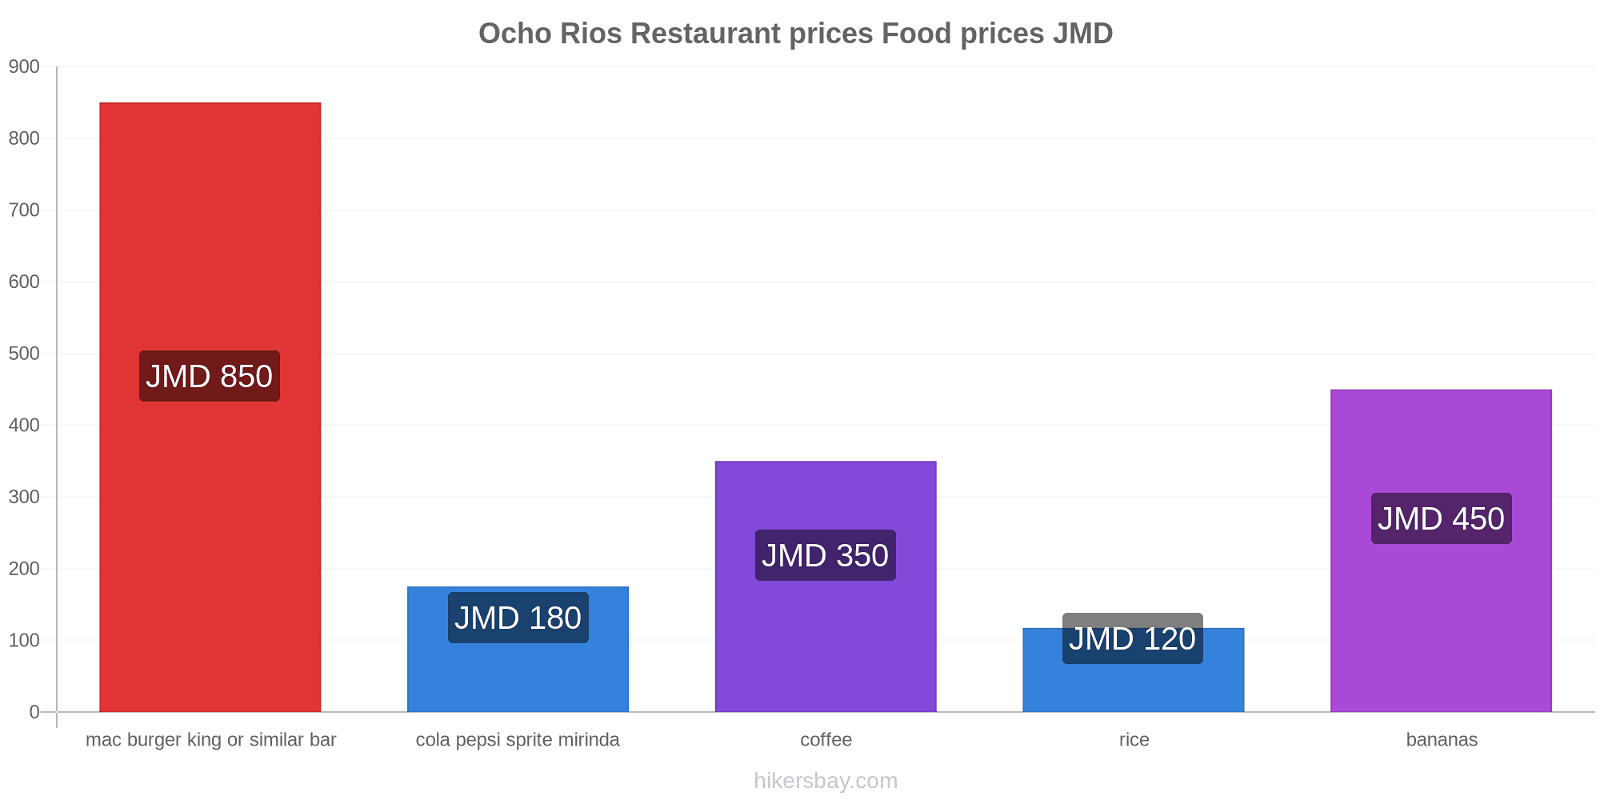 Ocho Rios price changes hikersbay.com